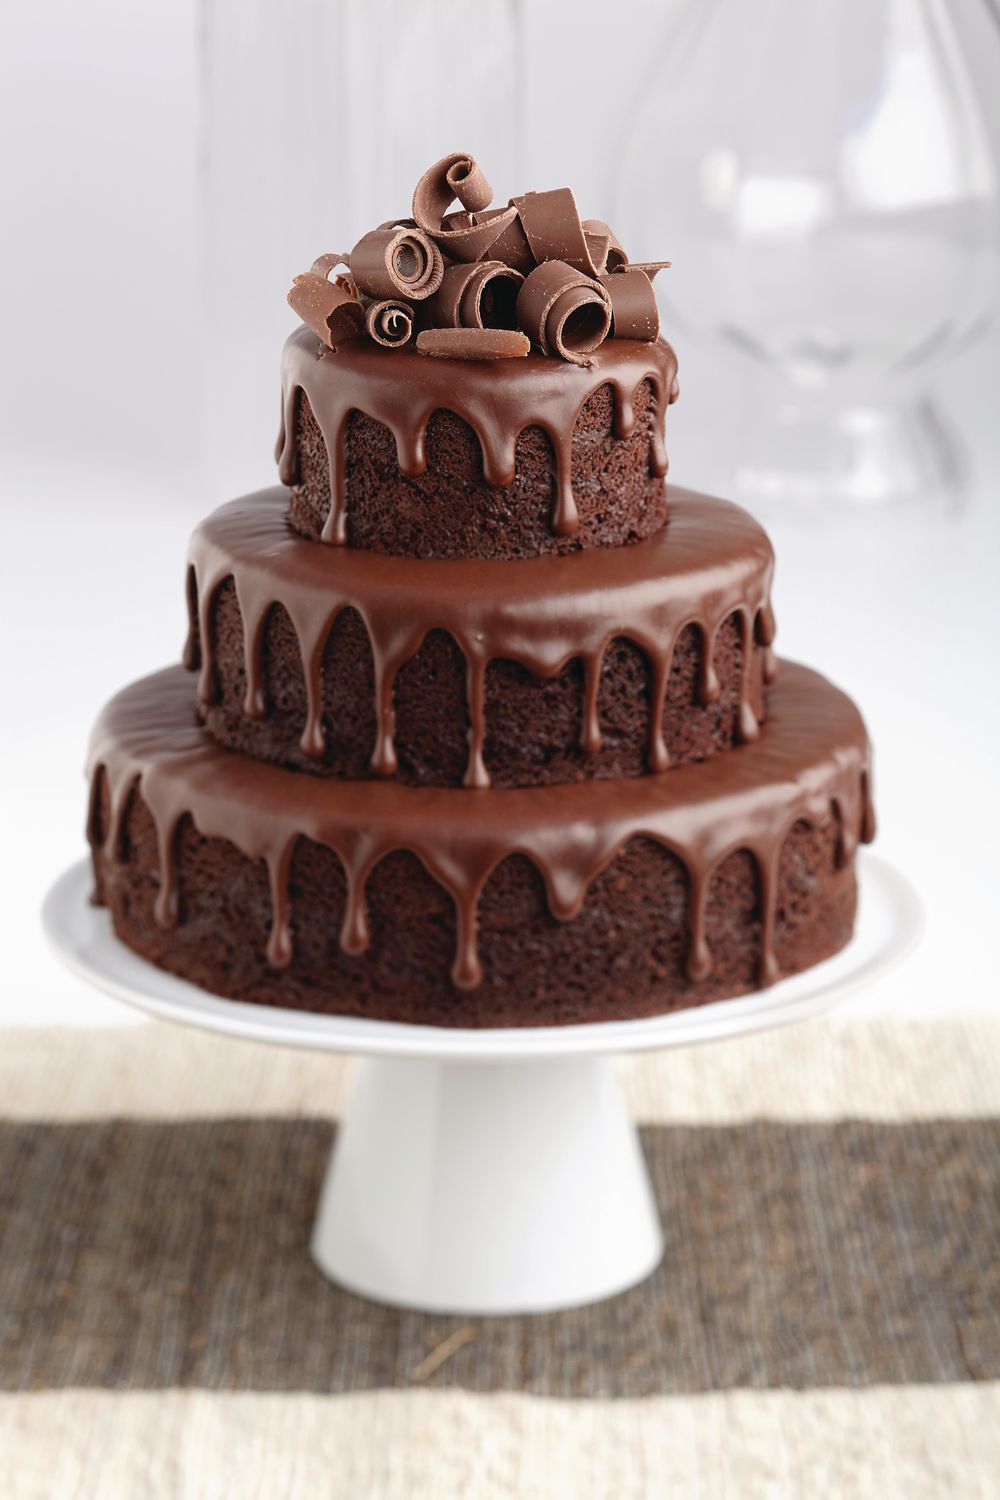 3,319 Three Floor Cake Images, Stock Photos & Vectors | Shutterstock